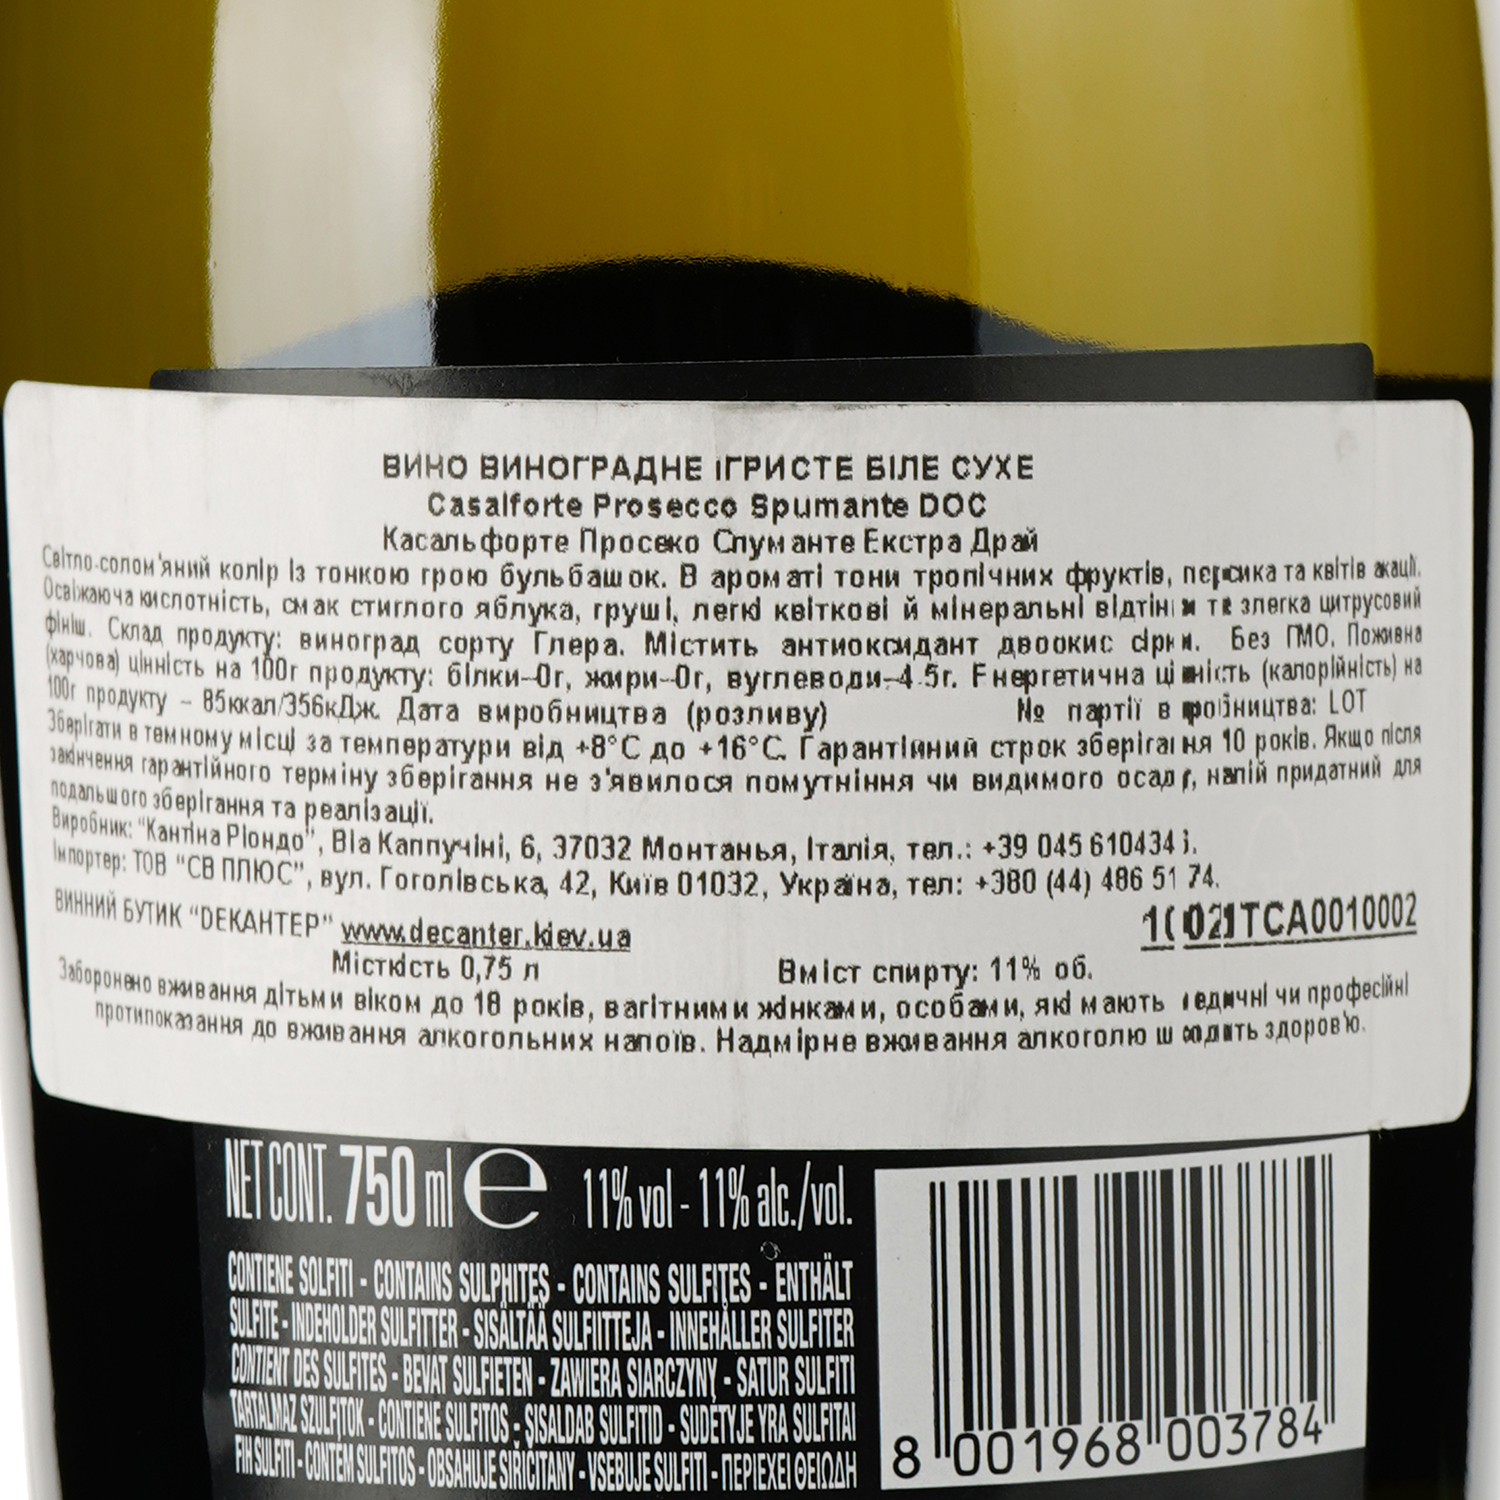 Игристое вино Casalforte Prosecco Spumante Extra Dry DOC, белое, экстра драй, 0,75 л - фото 3